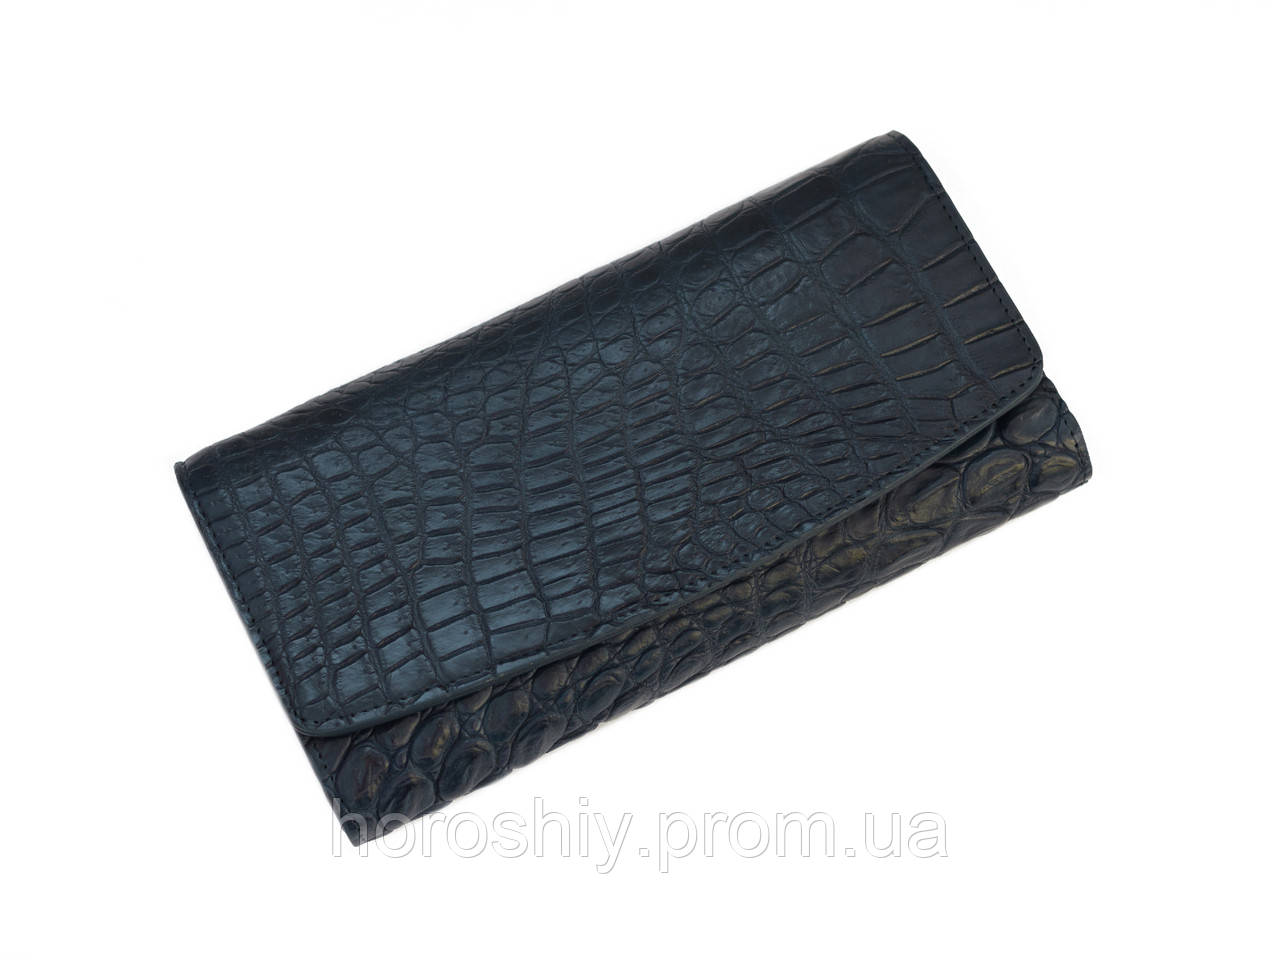 Жіночий гаманець зі шкіри крокодила Синій